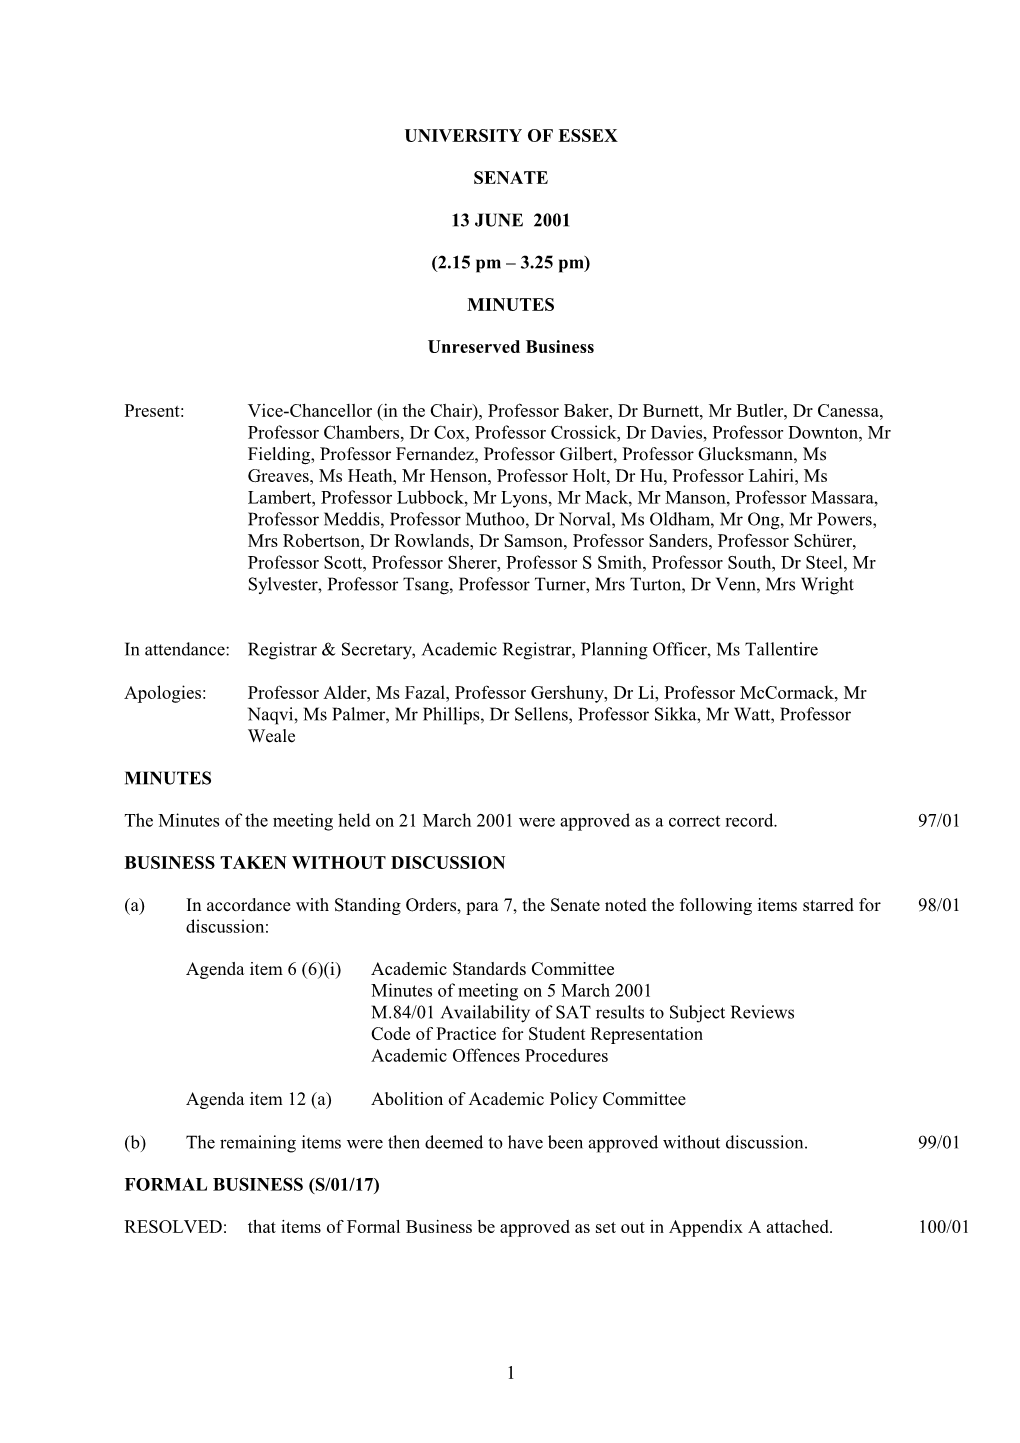 Senate Minutes June 2001 - University of Essex